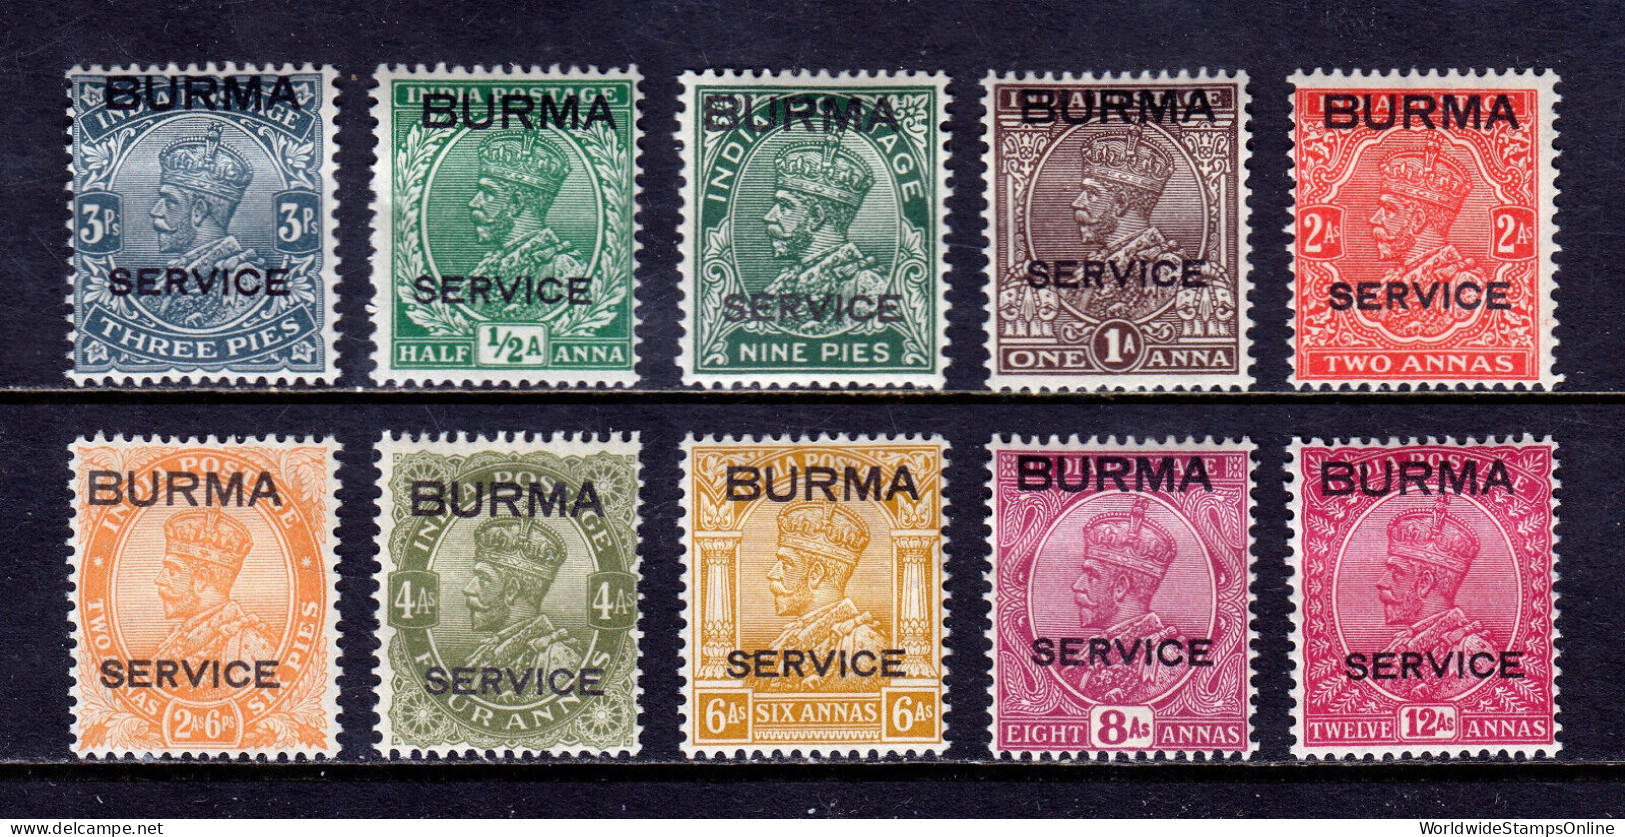 BURMA — SCOTT O1/O10 — 1937 KGV OFFICIALS — MH — SCV $113 - Birma (...-1947)